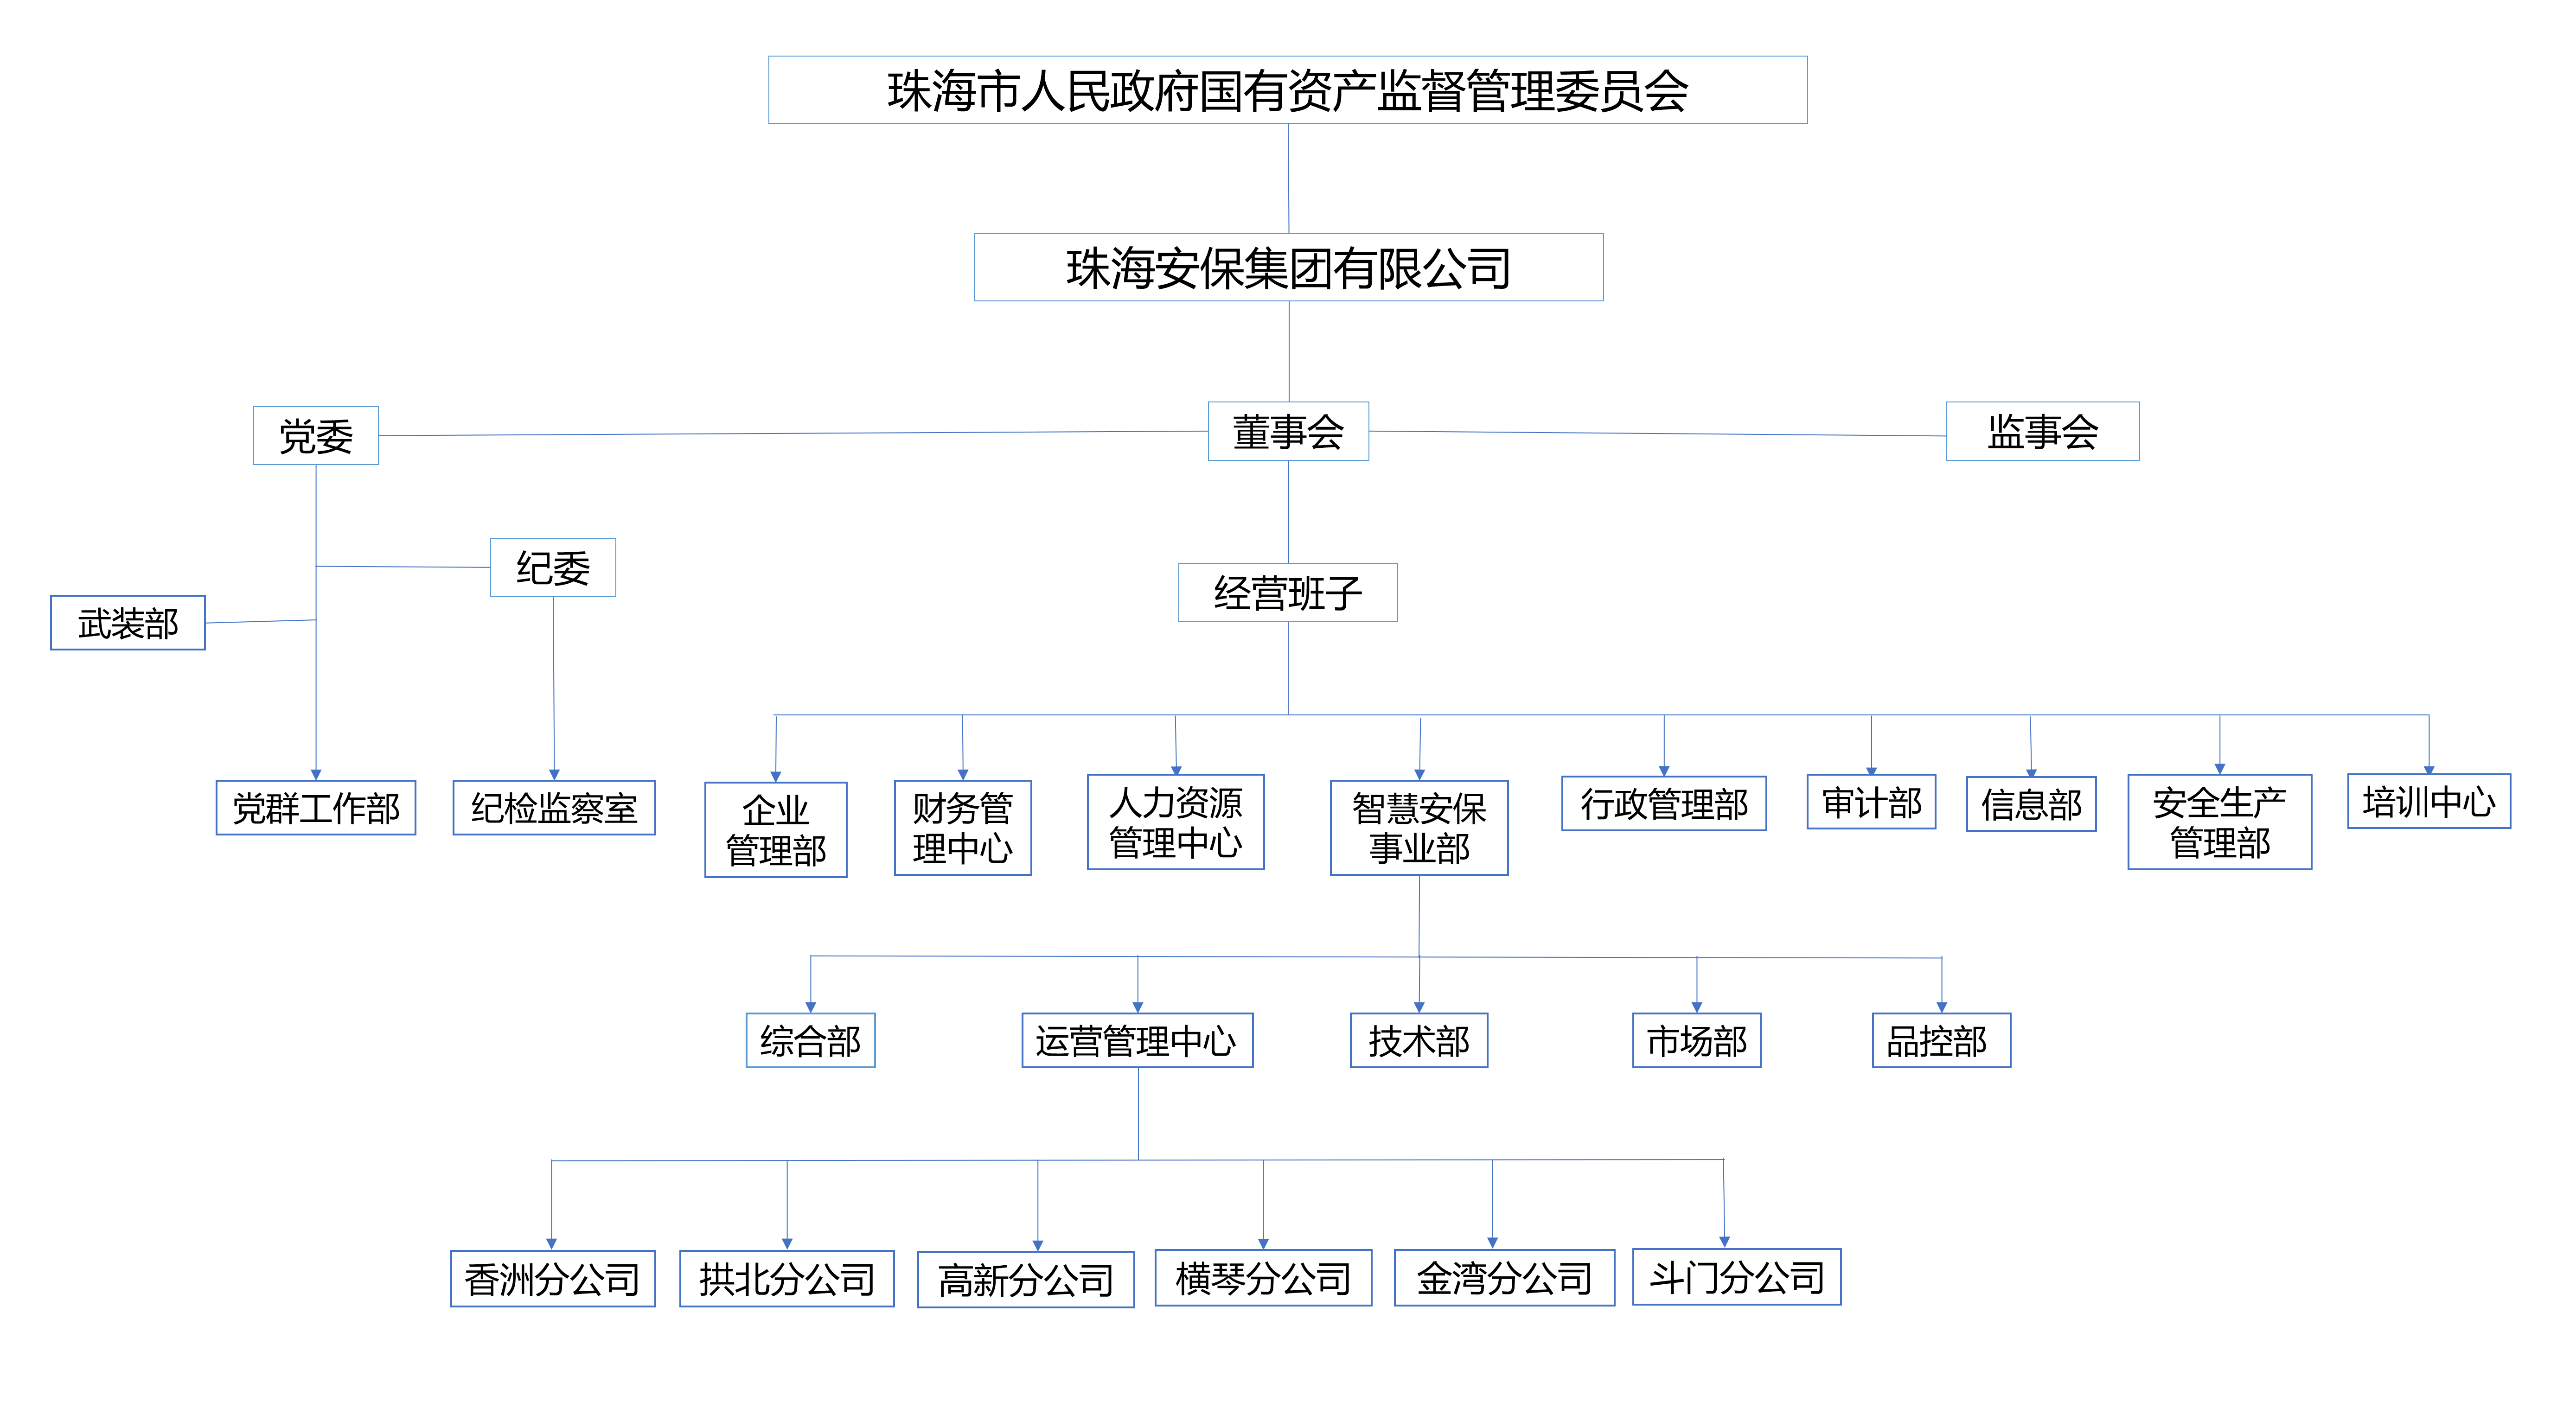 珠海安保集团有限公司组织架构图_01.png